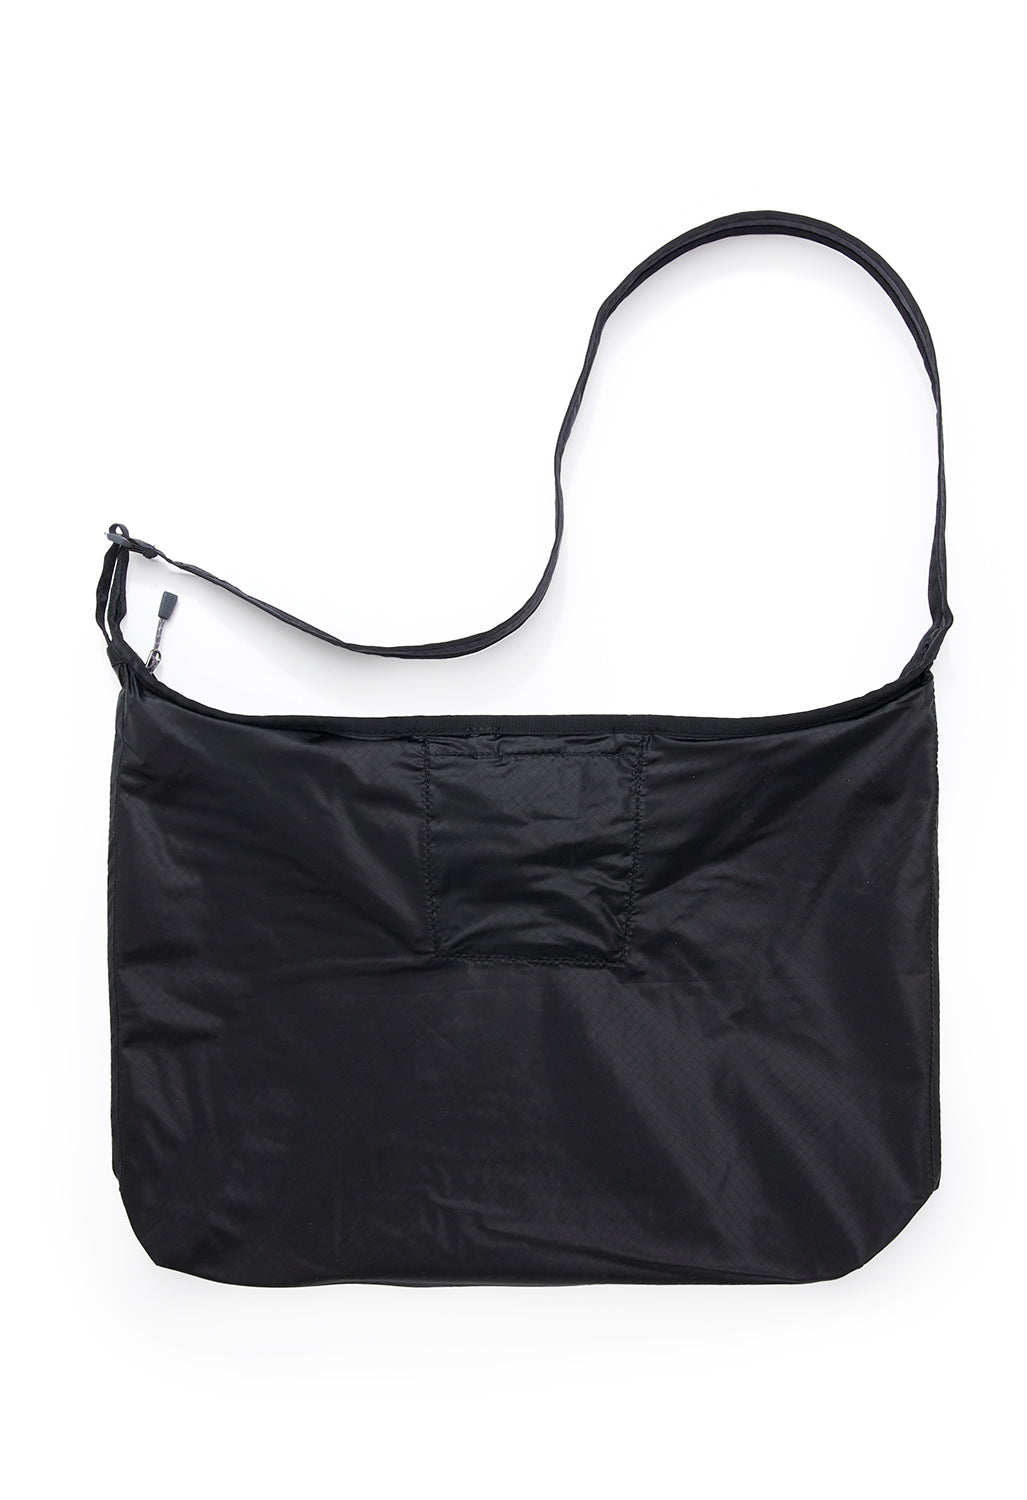 Montbell U.L. Mono Shoulder Bag Large - Black